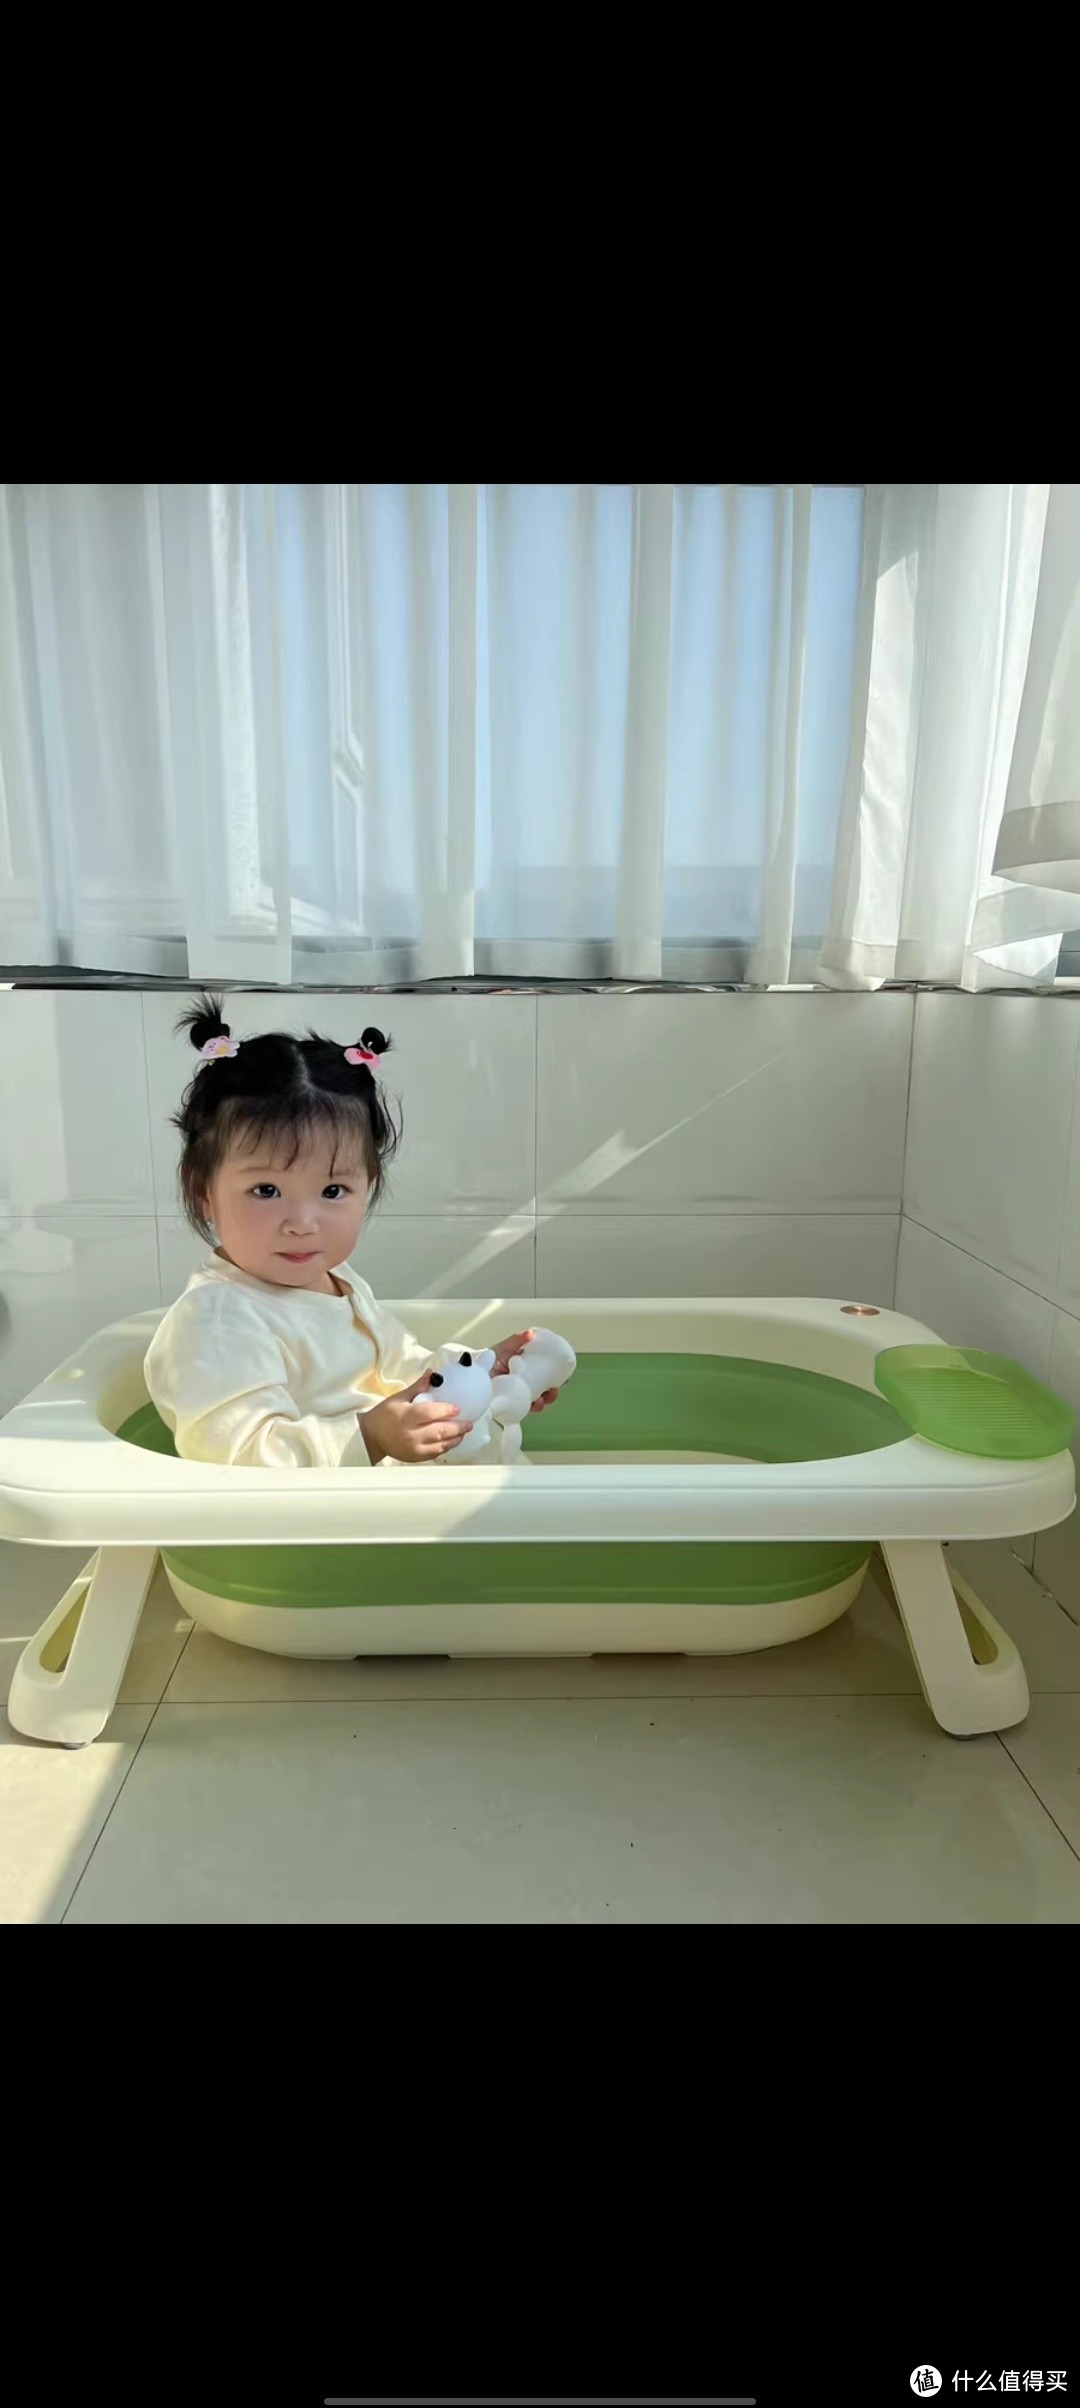 KUB可优比婴儿洗澡盆可折叠宝宝浴盆新生儿童大洗澡桶洗屁屁神器